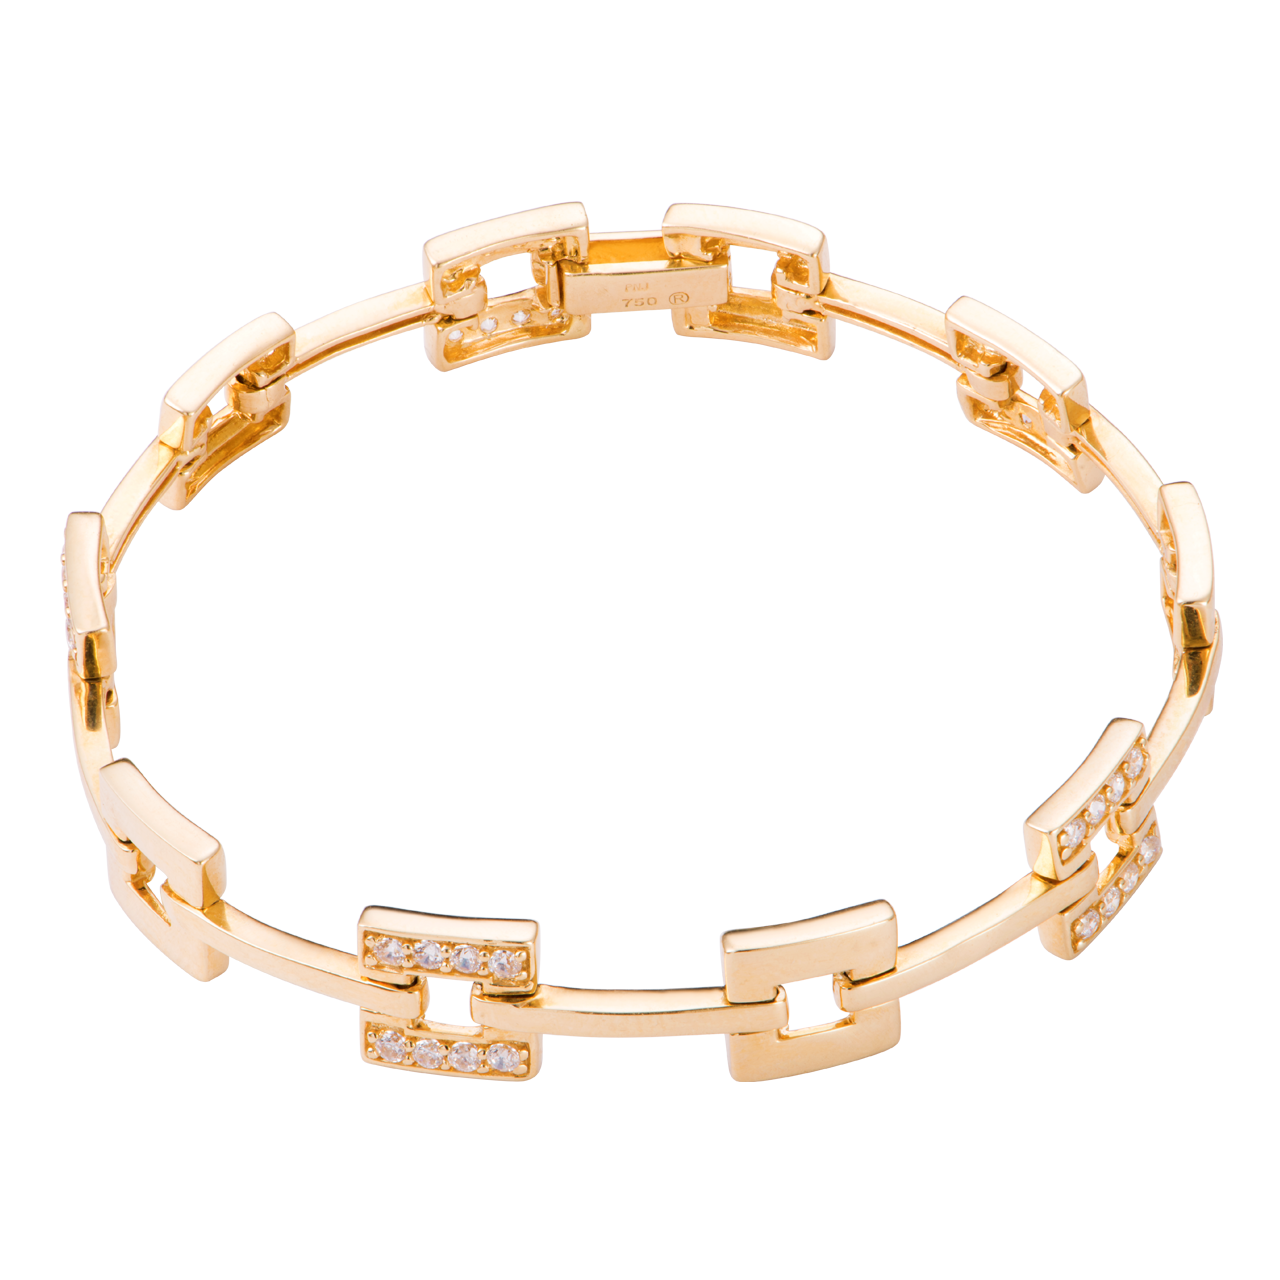 Để thể hiện sự sang trọng và quý phái, chiếc vòng tay vàng 18k PNJ sẽ là sự lựa chọn hoàn hảo cho bạn. Với chất liệu vàng 18k cao cấp và sự kết hợp tinh tế với đá quý, sản phẩm sẽ giúp bạn tỏa sáng và thu hút ánh nhìn từ mọi người.